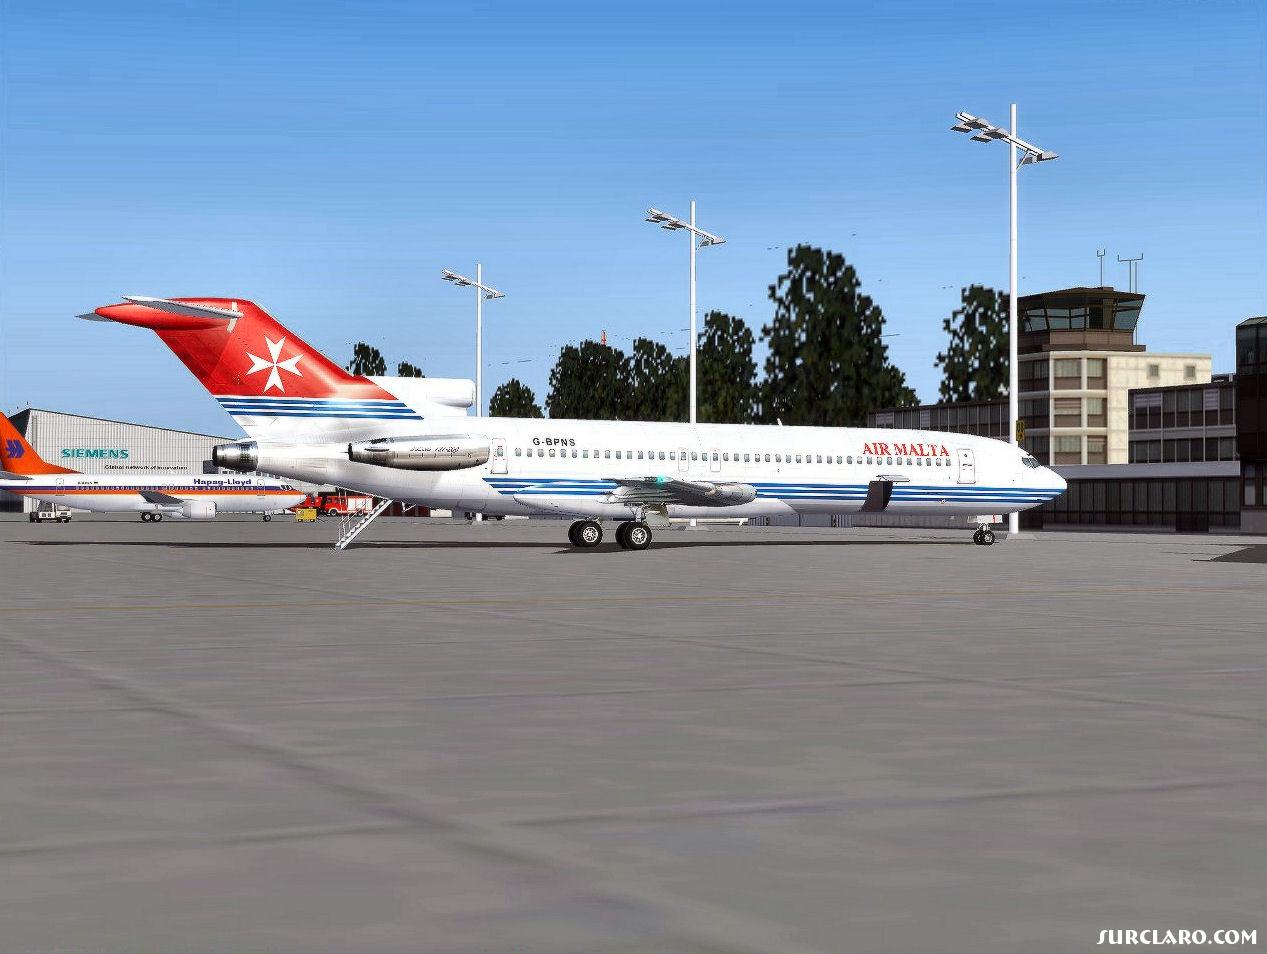 AIR MALTA 727-200 stand 8 @ EDDN - Photo 16005